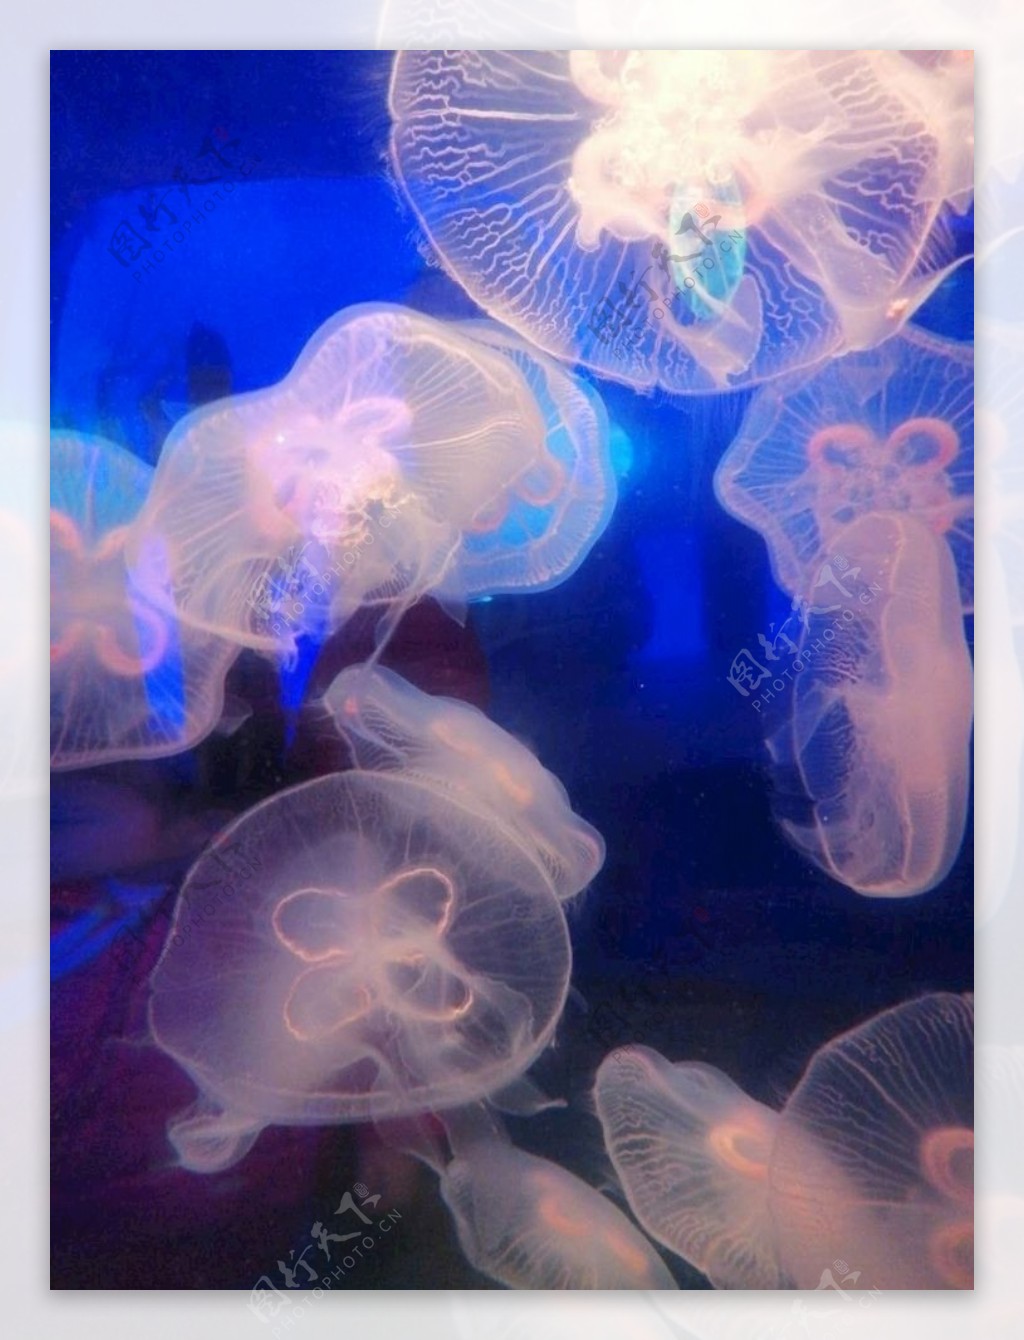 海洋生物水母图片